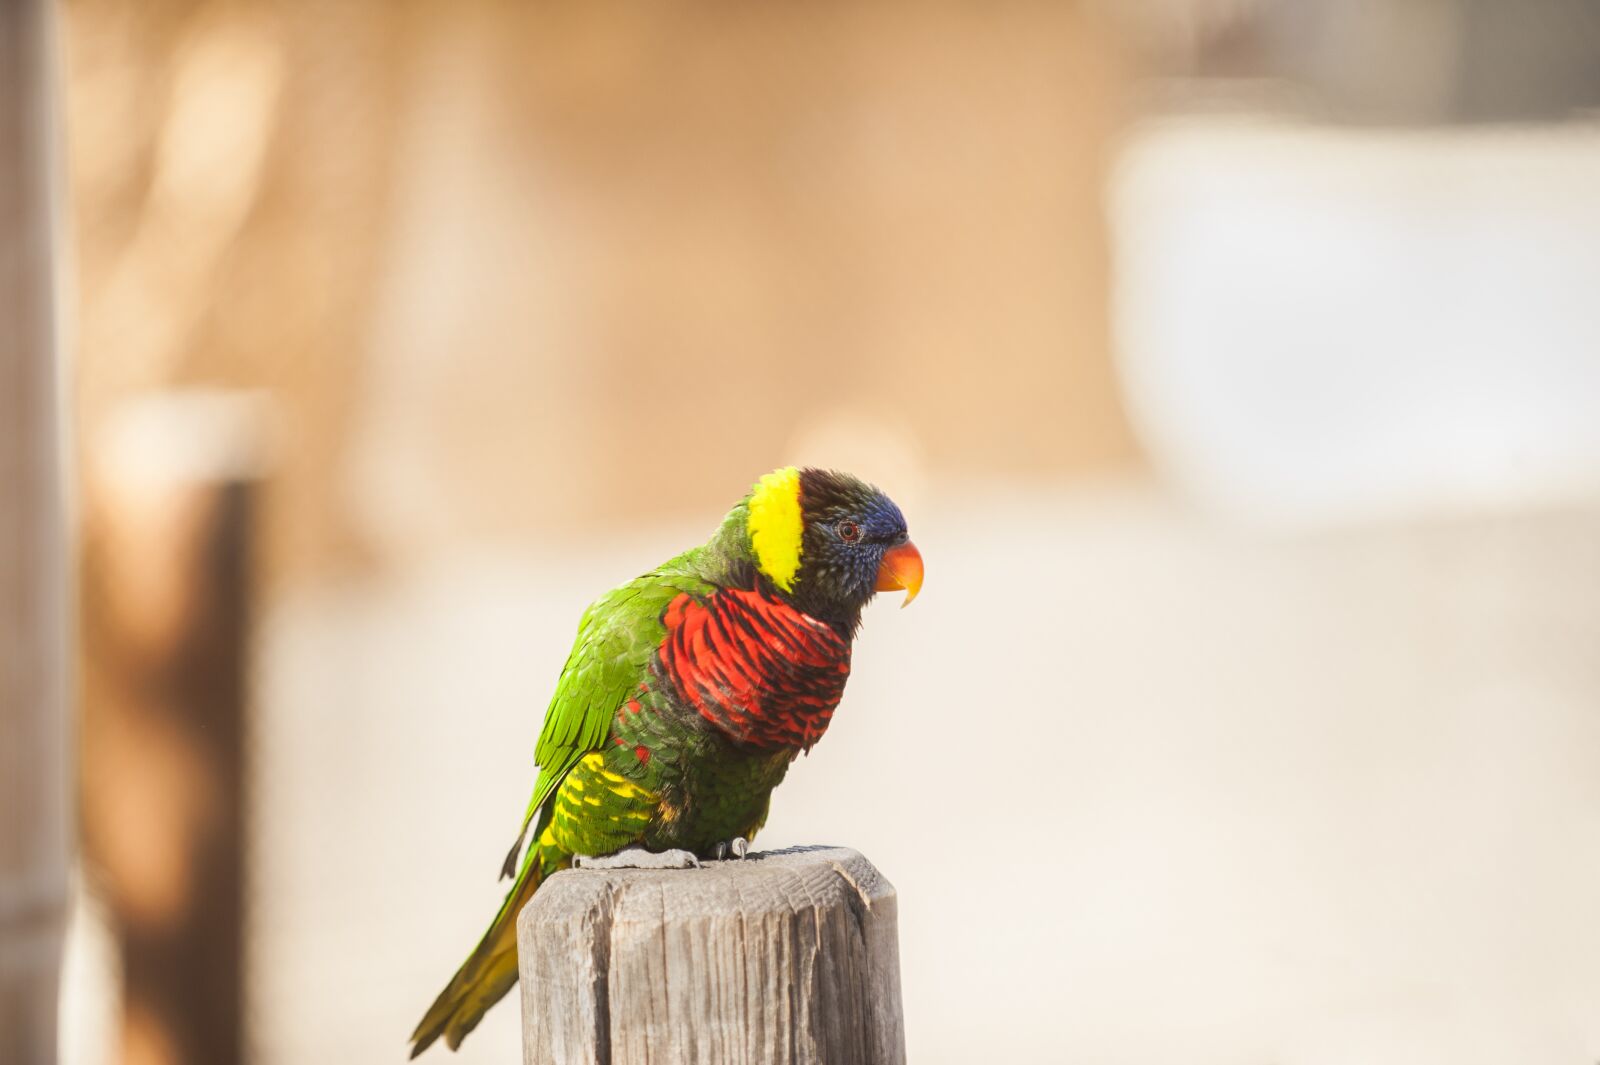 Nikon D700 sample photo. Bird, parrot, animal photography